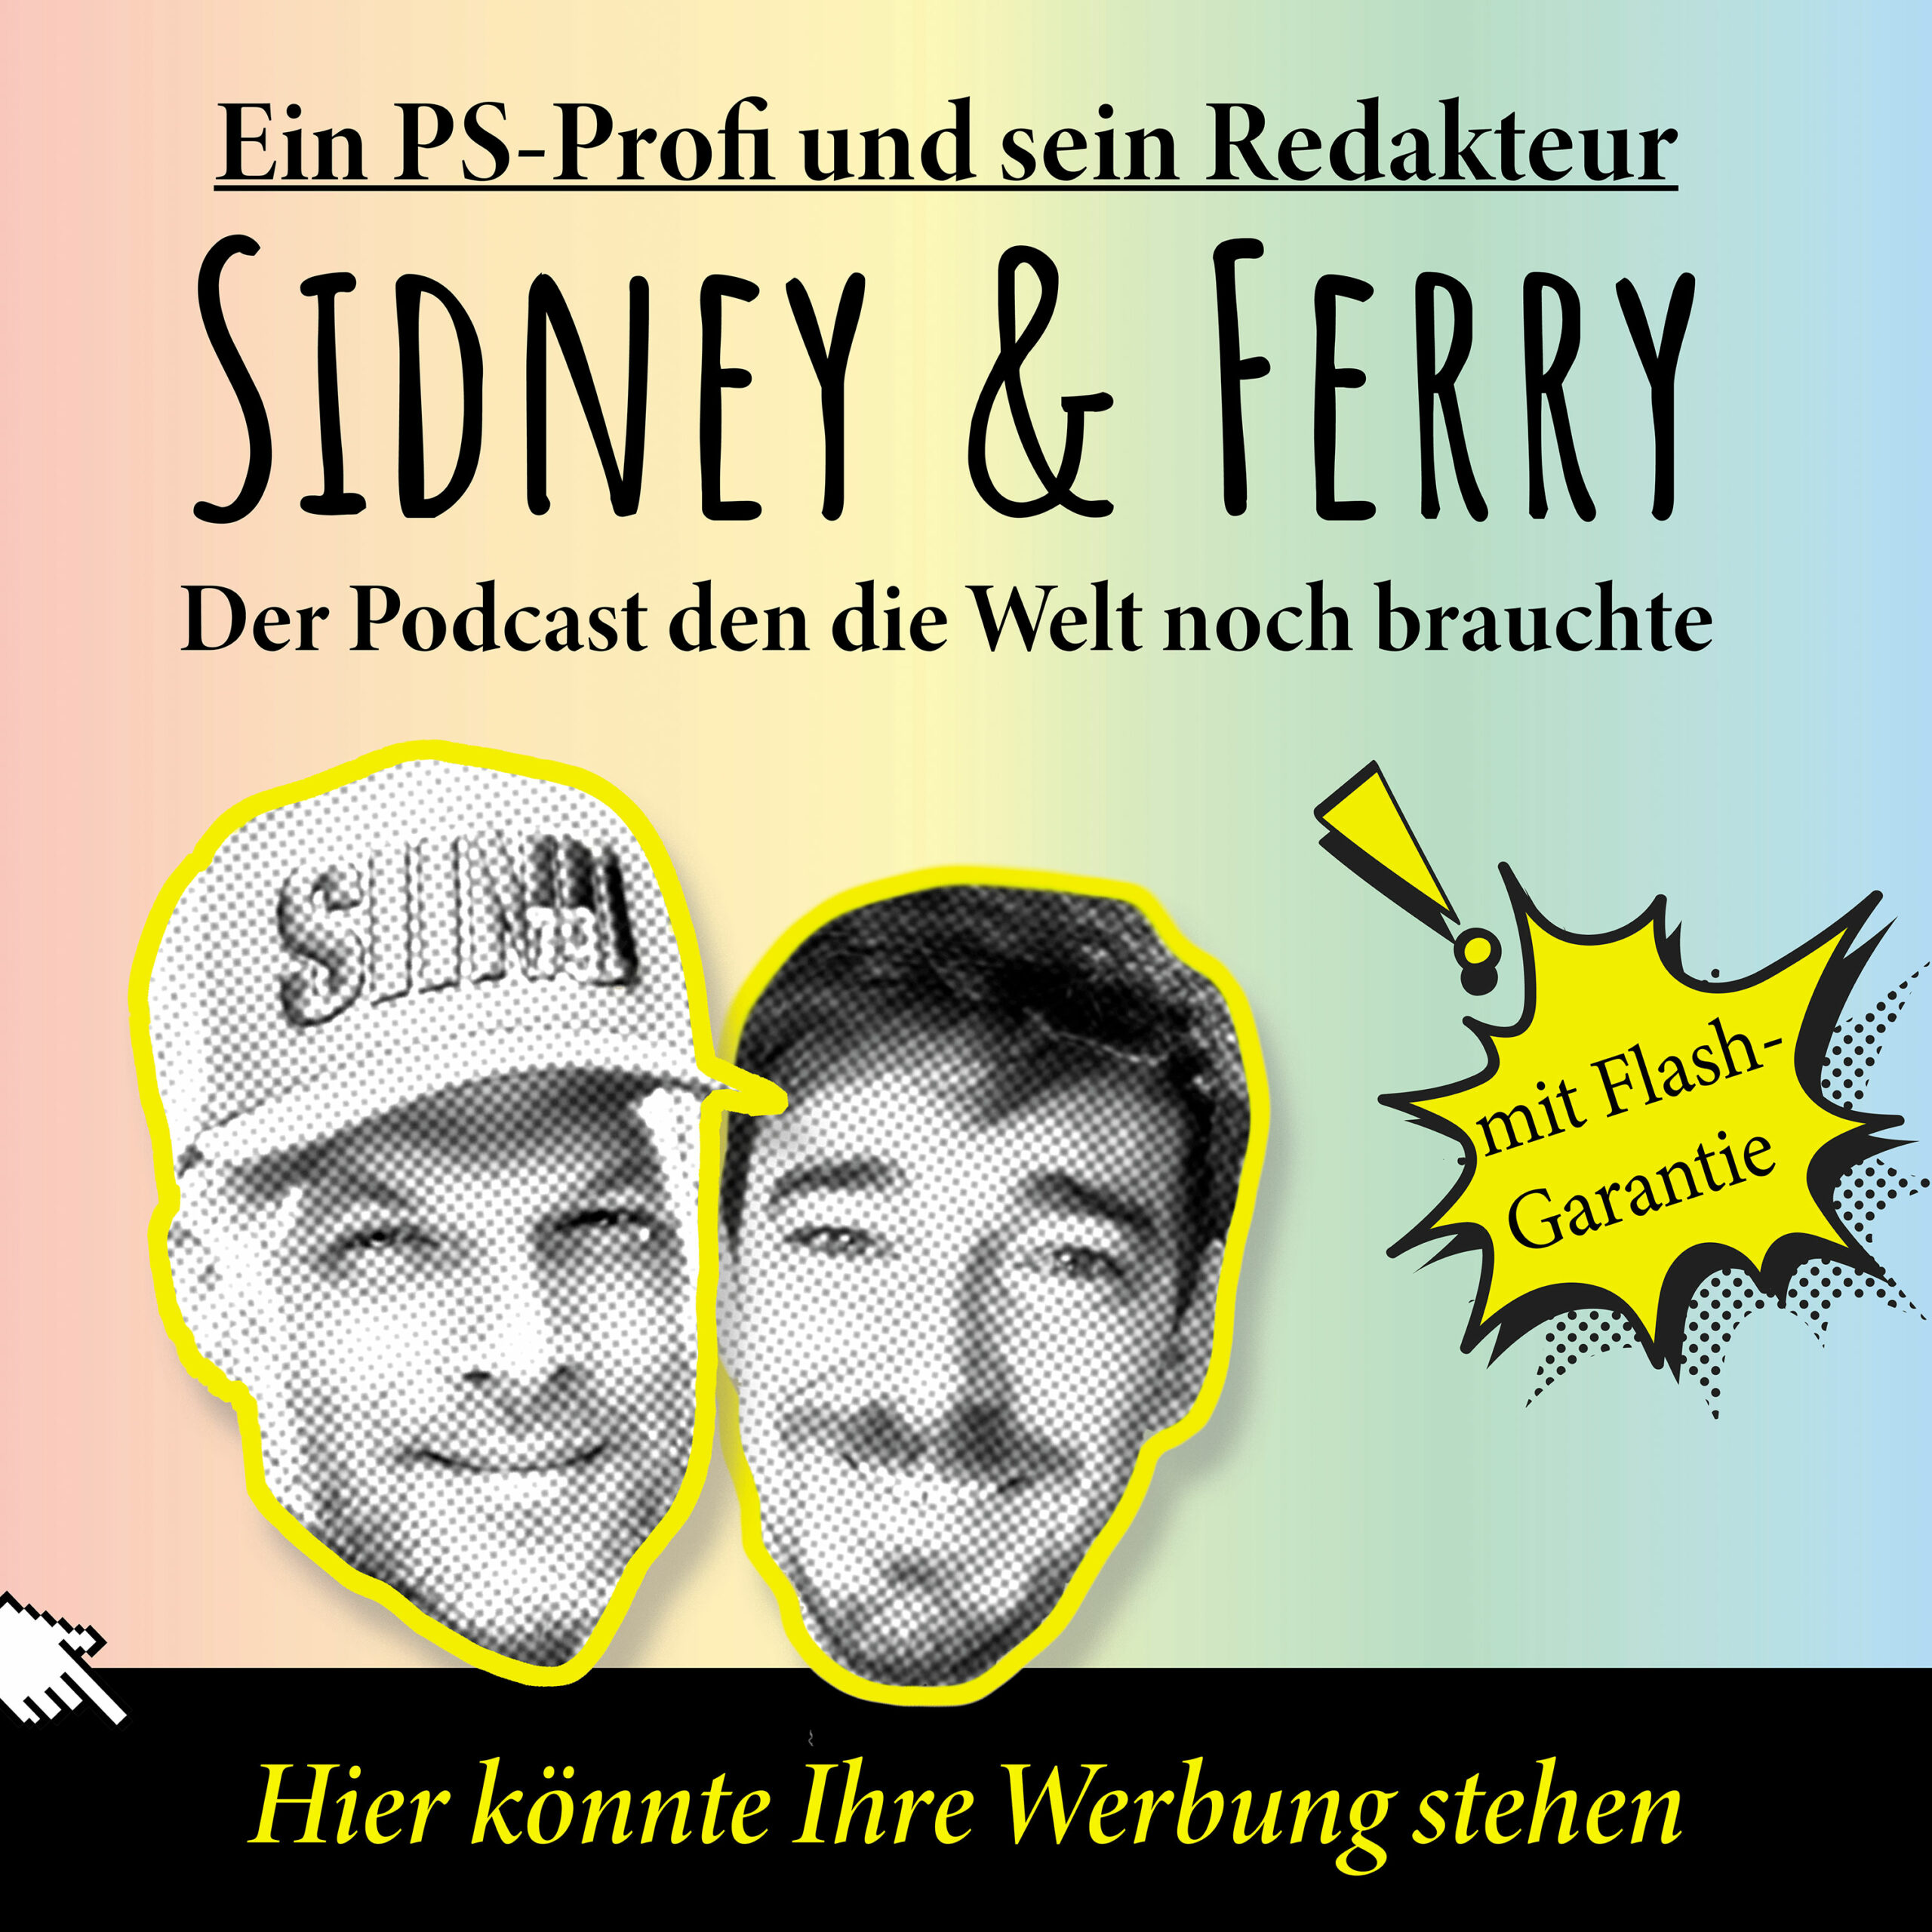 Vorgestellt: Sidney und Ferry Podcast